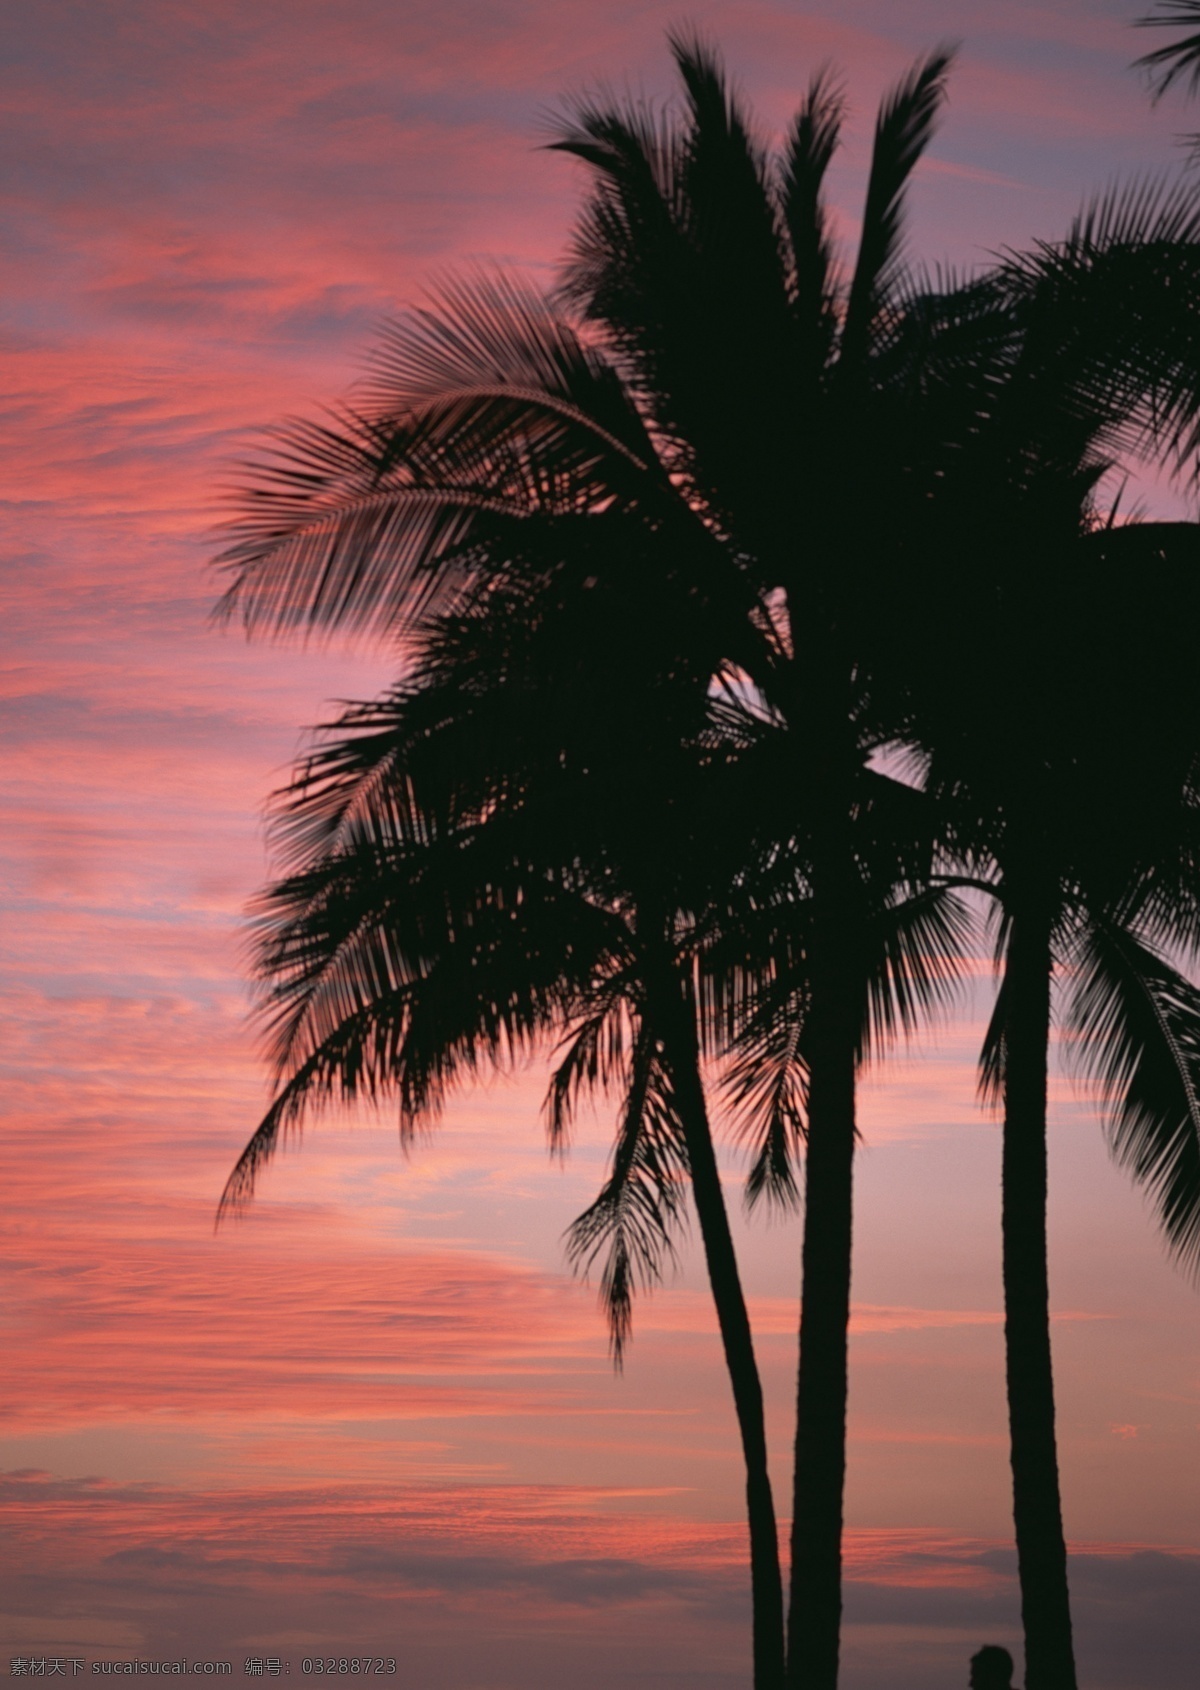 夕阳 照射 椰树 唯美 景色 傍晚 海边风景 夕阳红 美景 风景 自然 天空 晚霞 黄昏 日落 树木 树 海边 高清图片 大海图片 风景图片